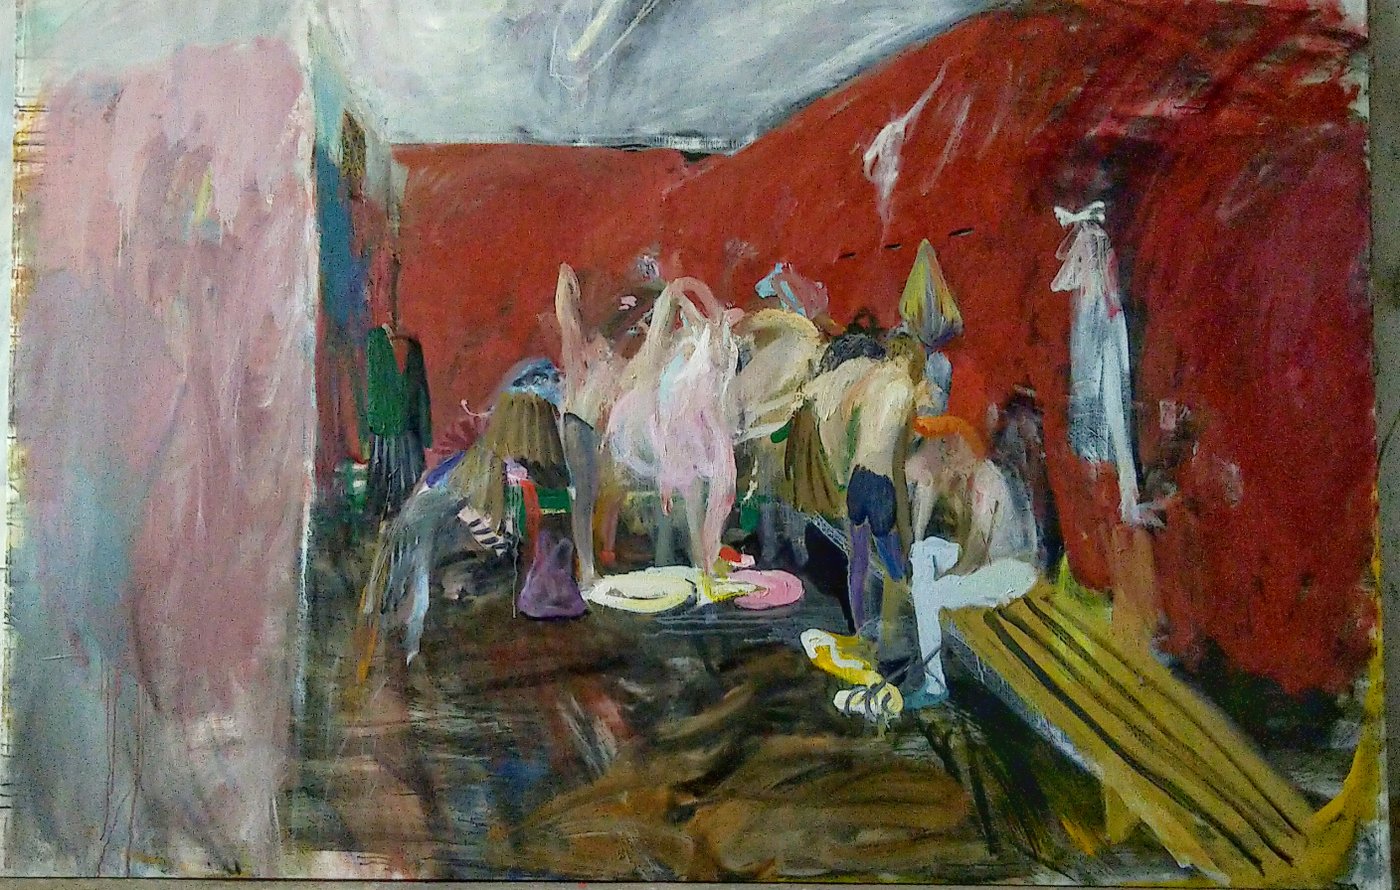 Gemälde eines Raumes mit roten Wänden in dem mehrere Personen an einer Bank stehen oder sitzen und sich umziehen, womöglich ein Umkleideraum eines Bades